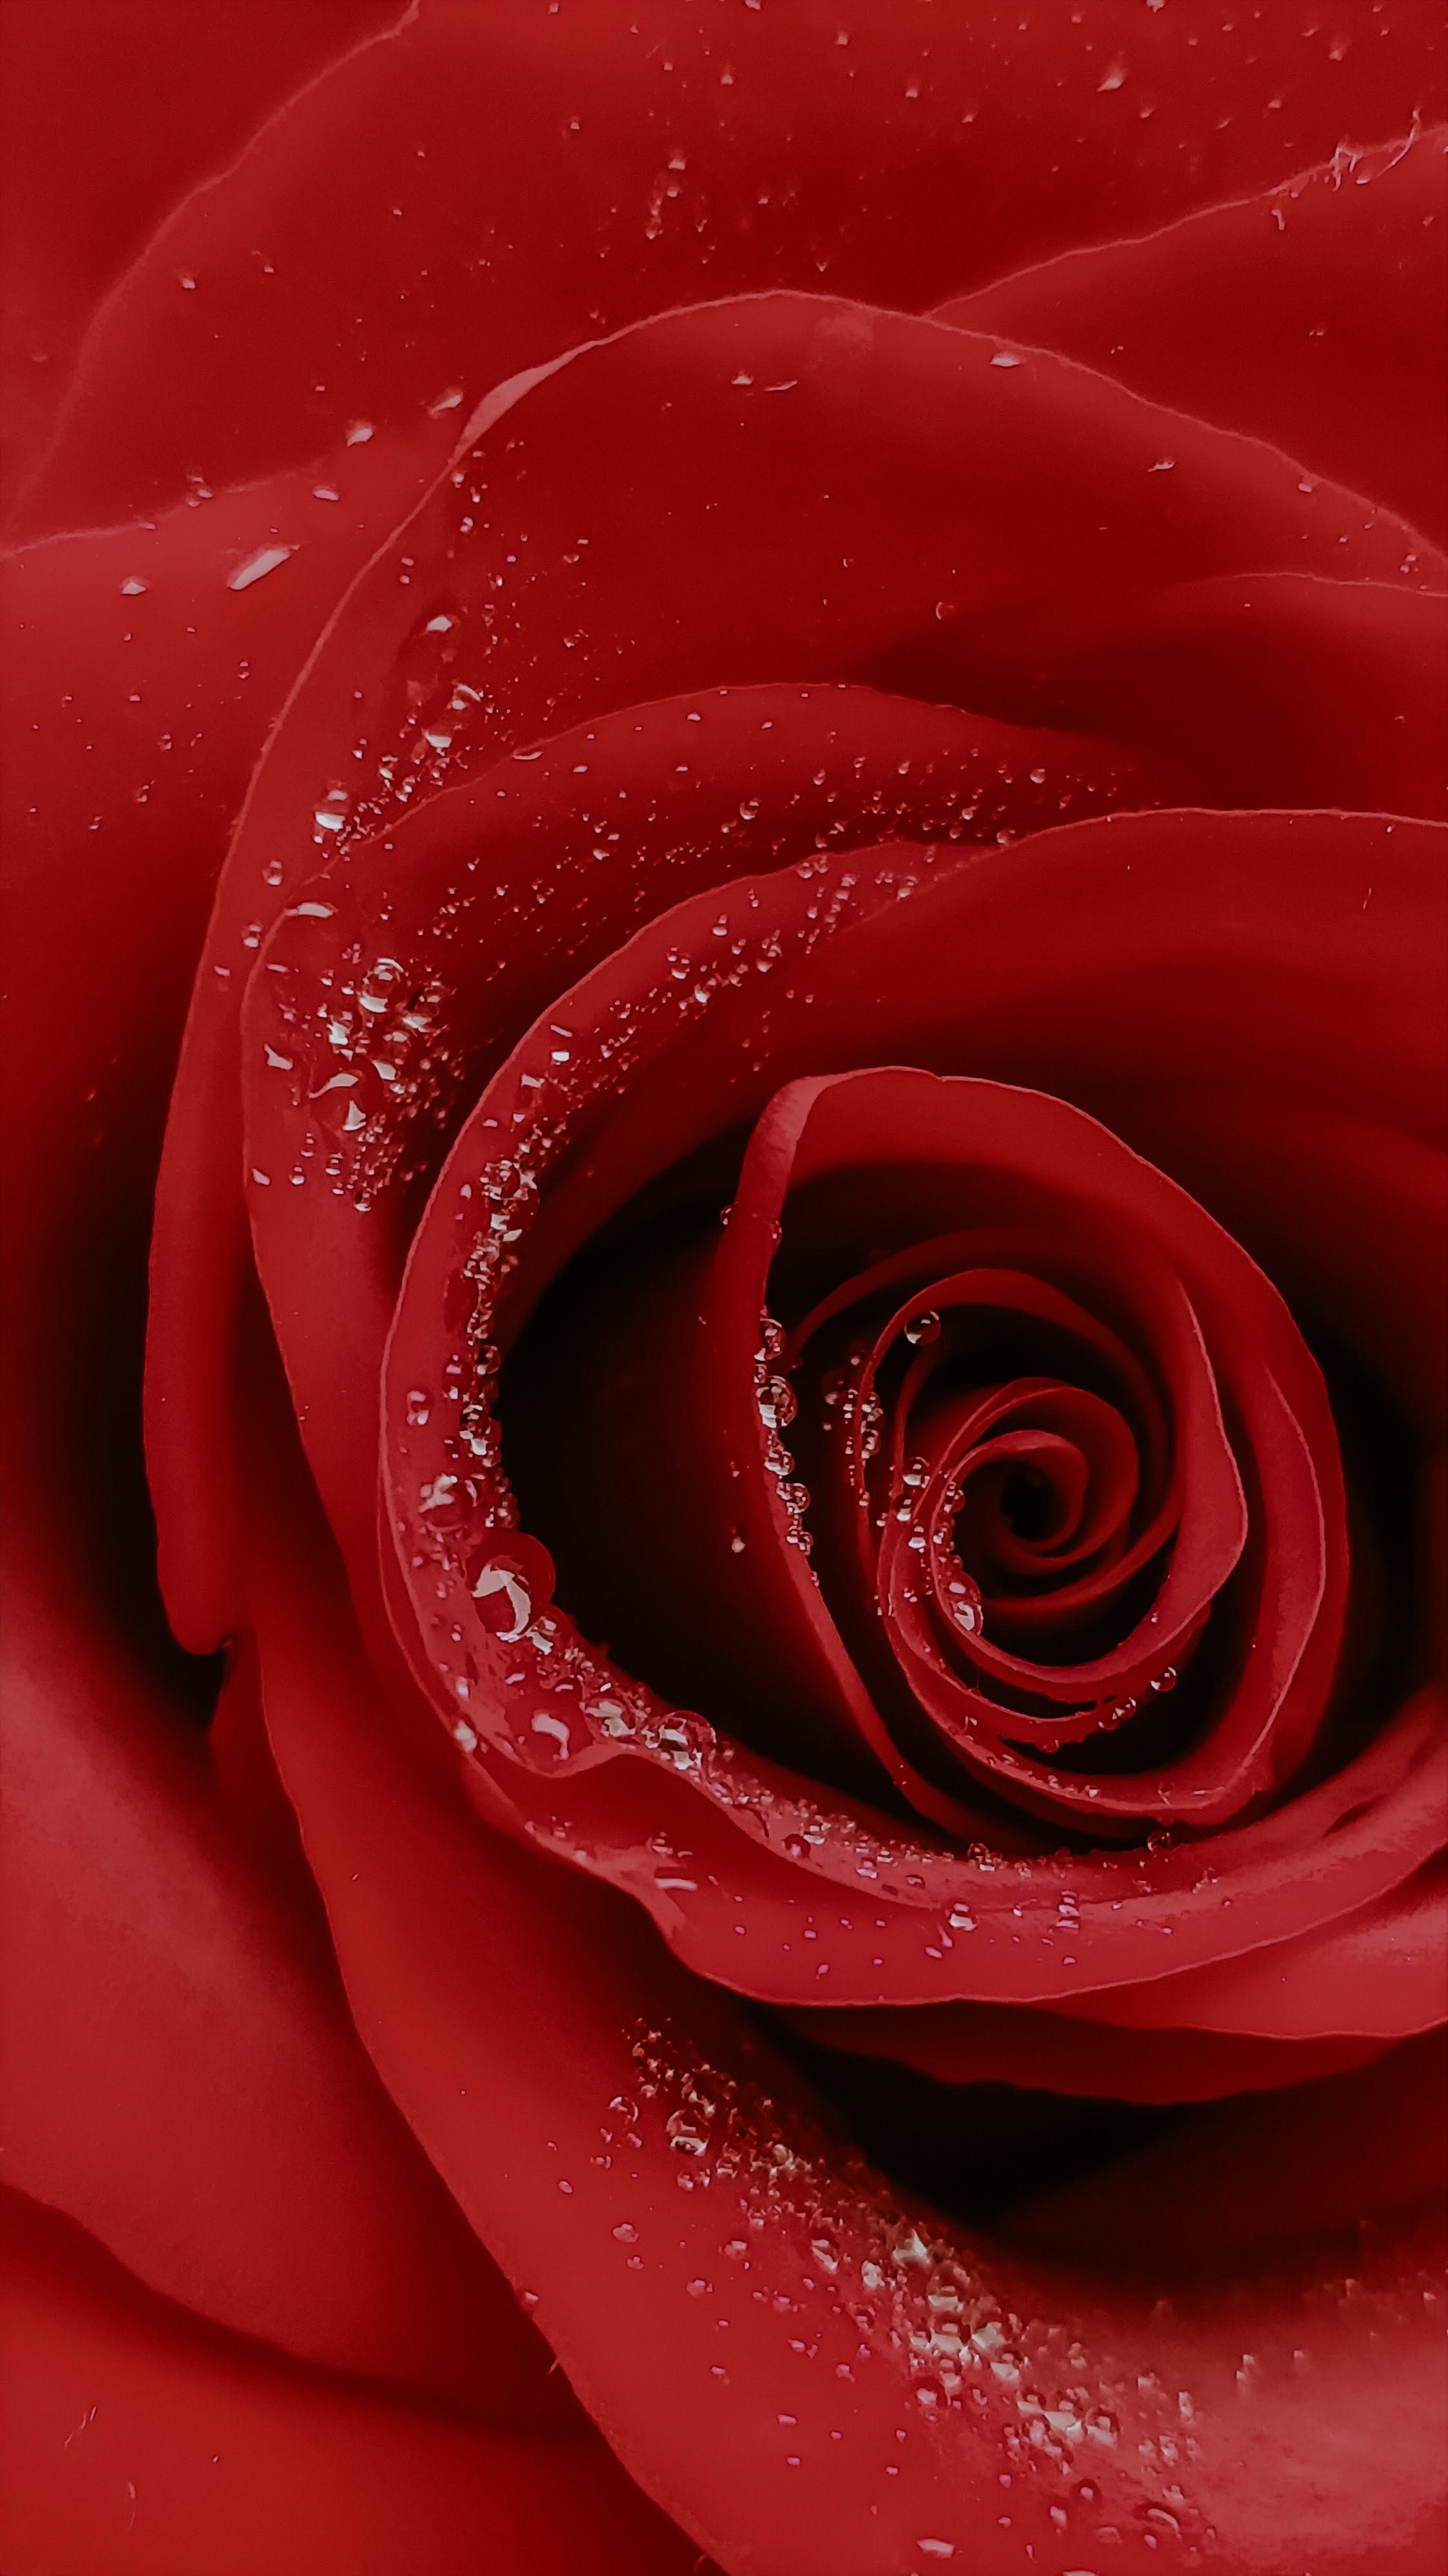 rose flower, drops, flower, macro, rose Image for desktop